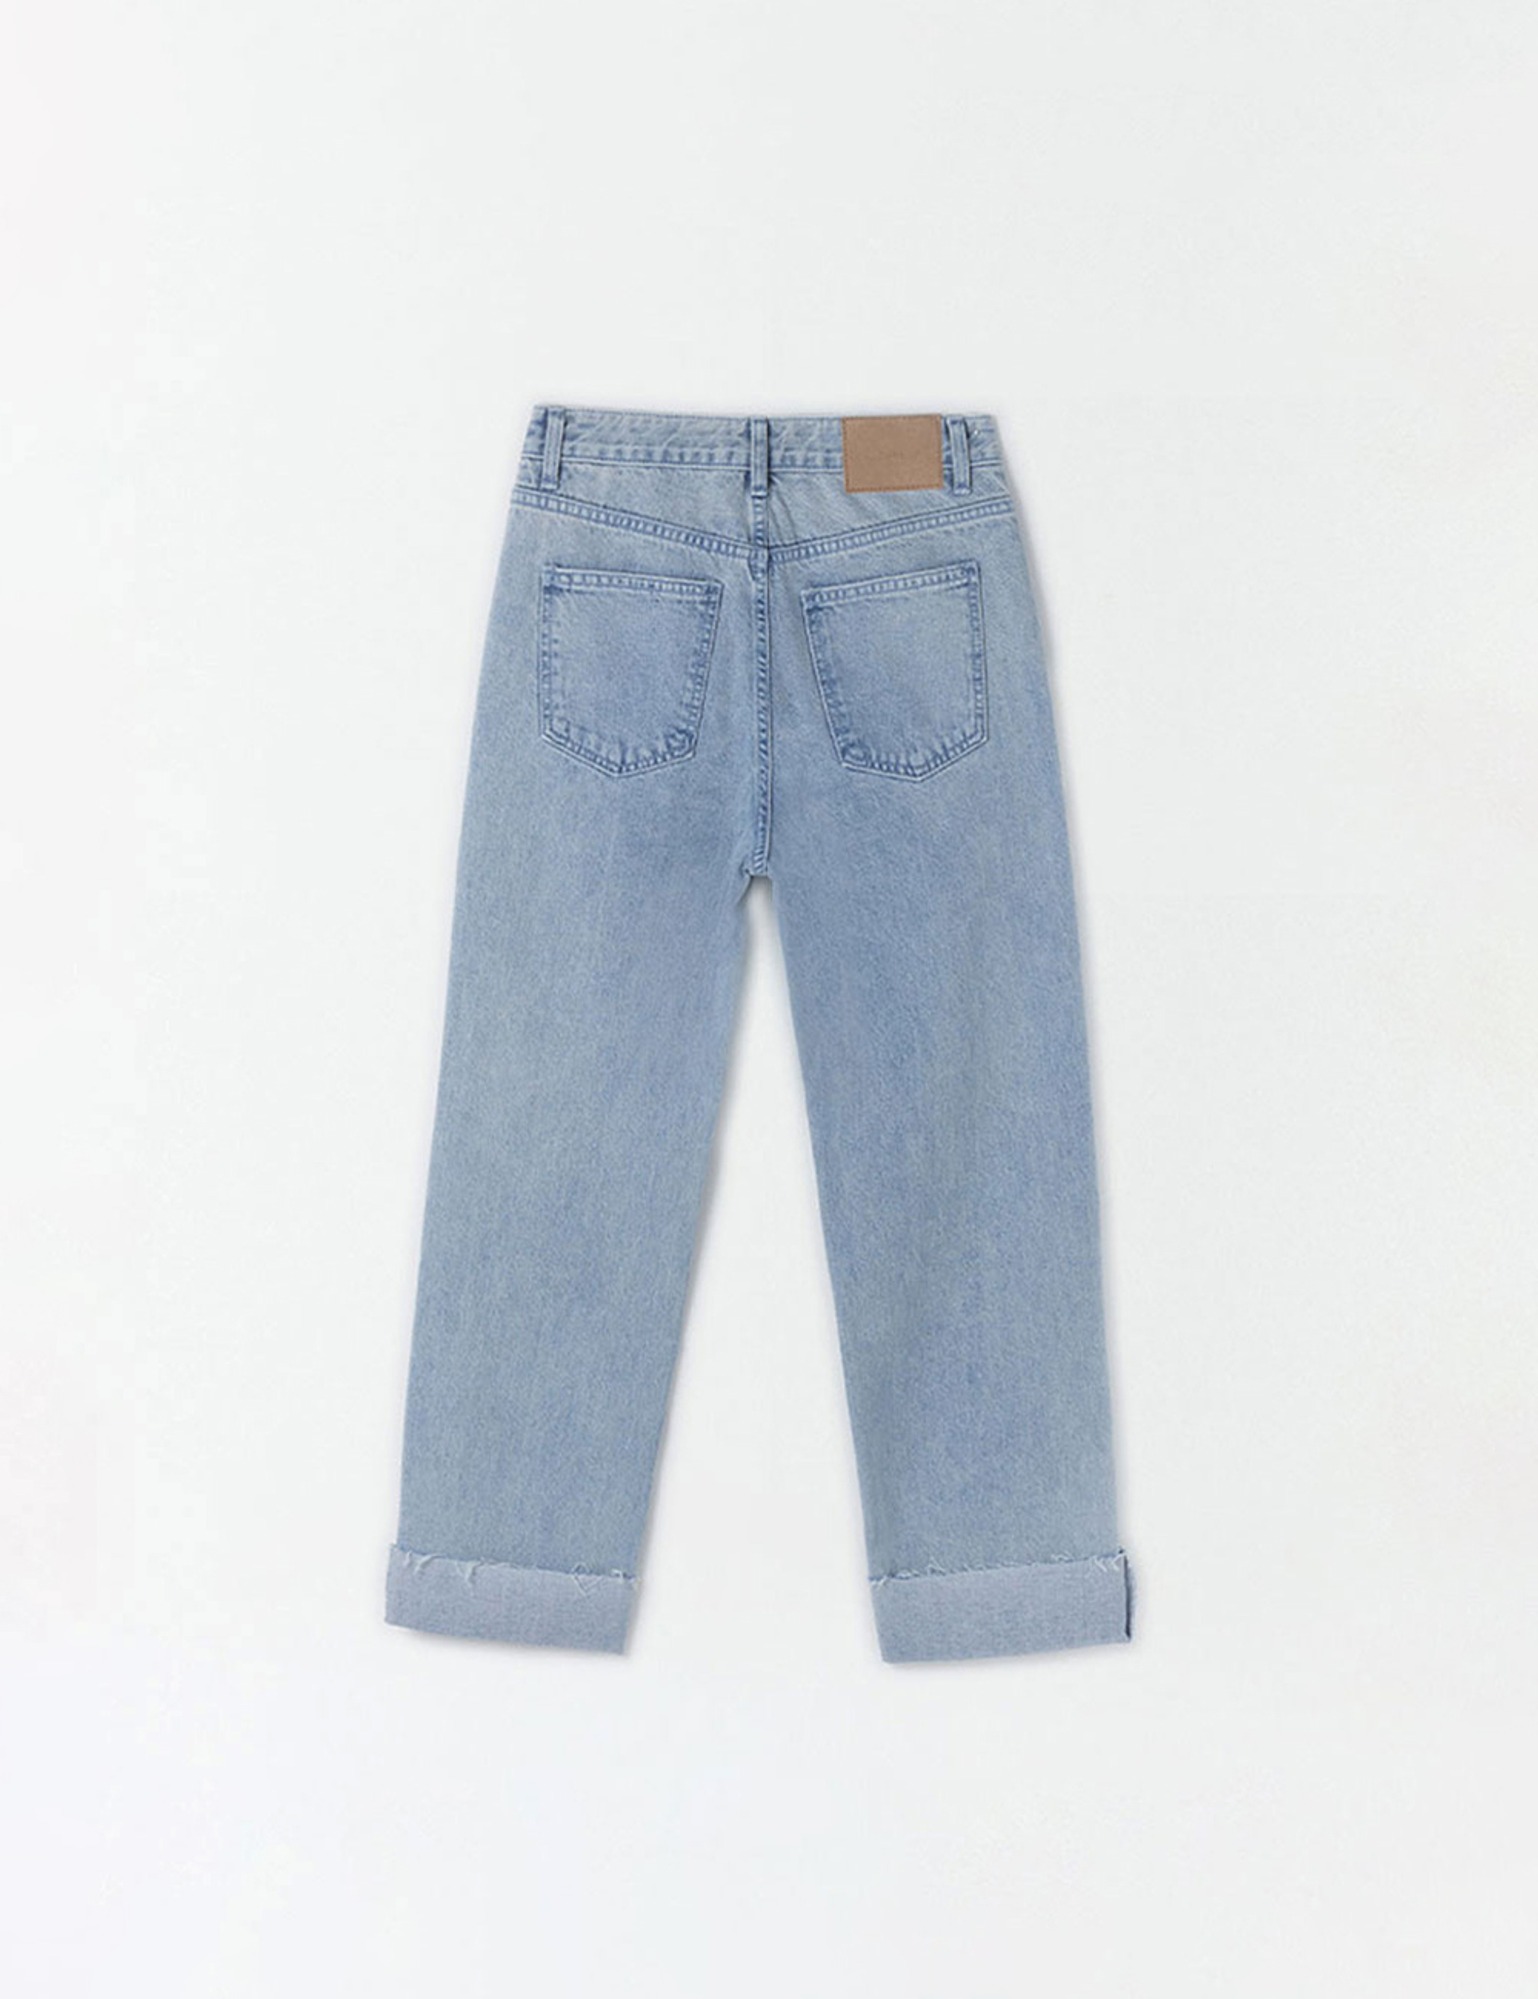 Plain Cut Denim Pants (Light Blue)